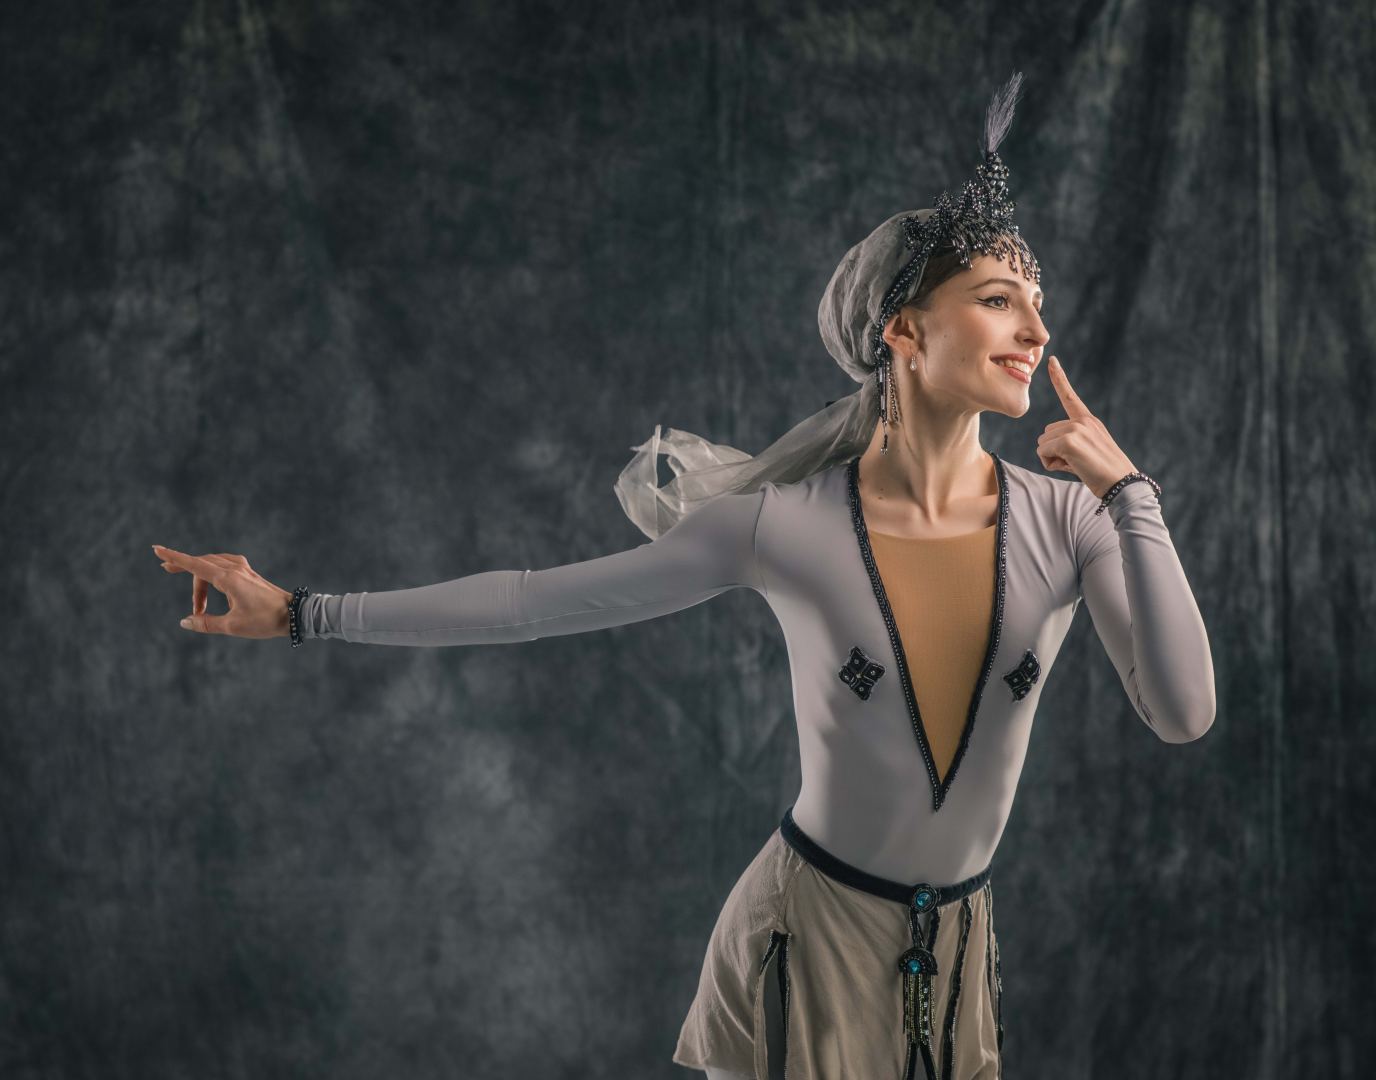 Костюмы, созданные специально для исторической презентации легендарного балета "Легенда о любви" (ФОТО/ВИДЕО)